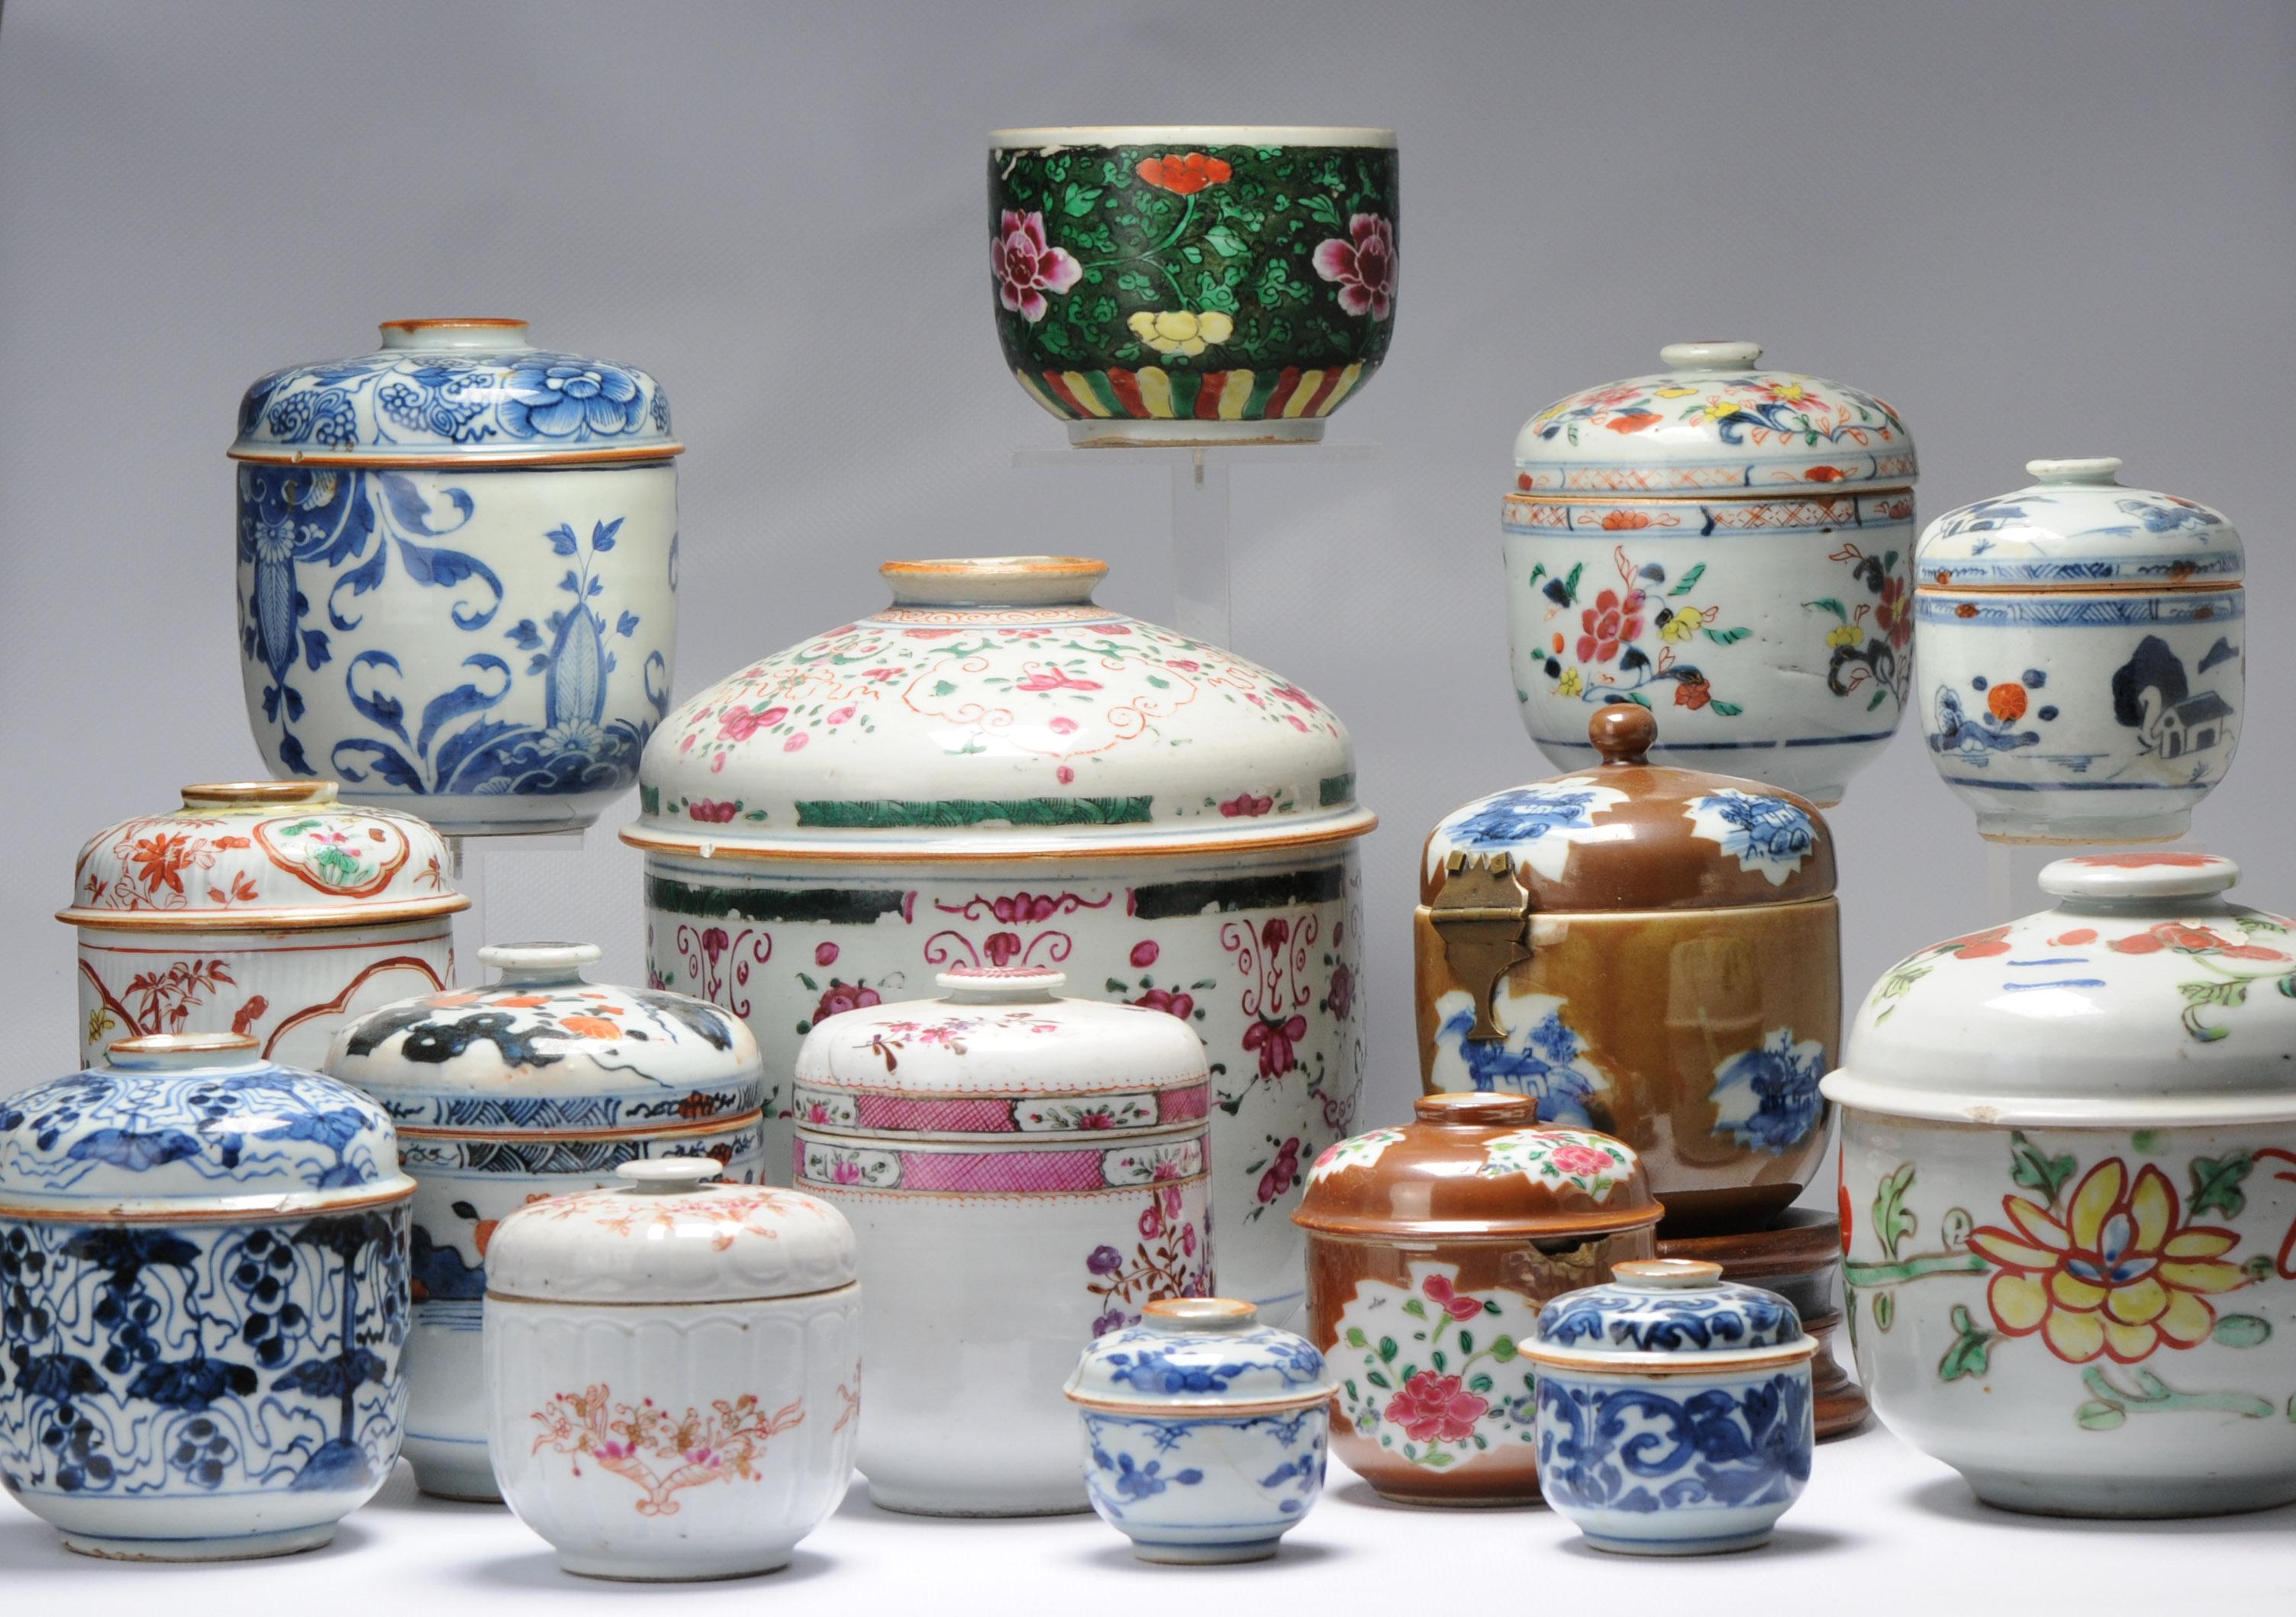 Description

Collectional par nous personnellement au cours des 8 dernières années. Bel exemple de la variété des porcelaines fabriquées au XVIIIe siècle. Tous datent du 18e siècle et vont de Kangxi à Qianlong. Fencai, à Imari, Batavian et Blue